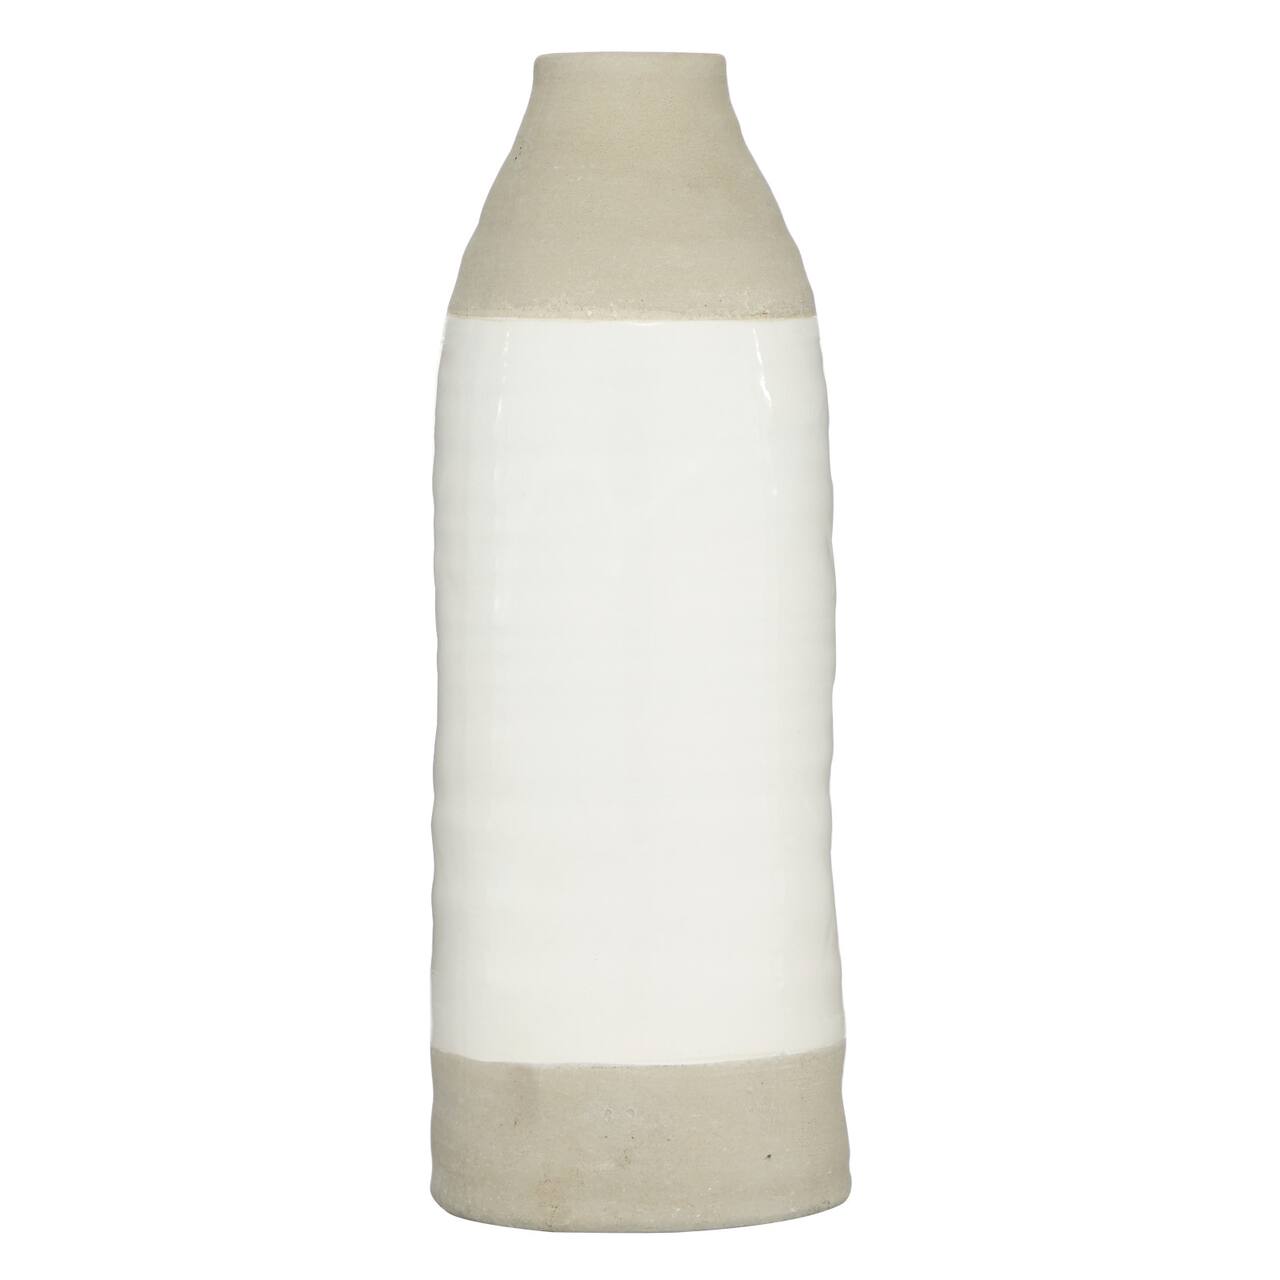 Gray Stoneware Coastal Style Vase